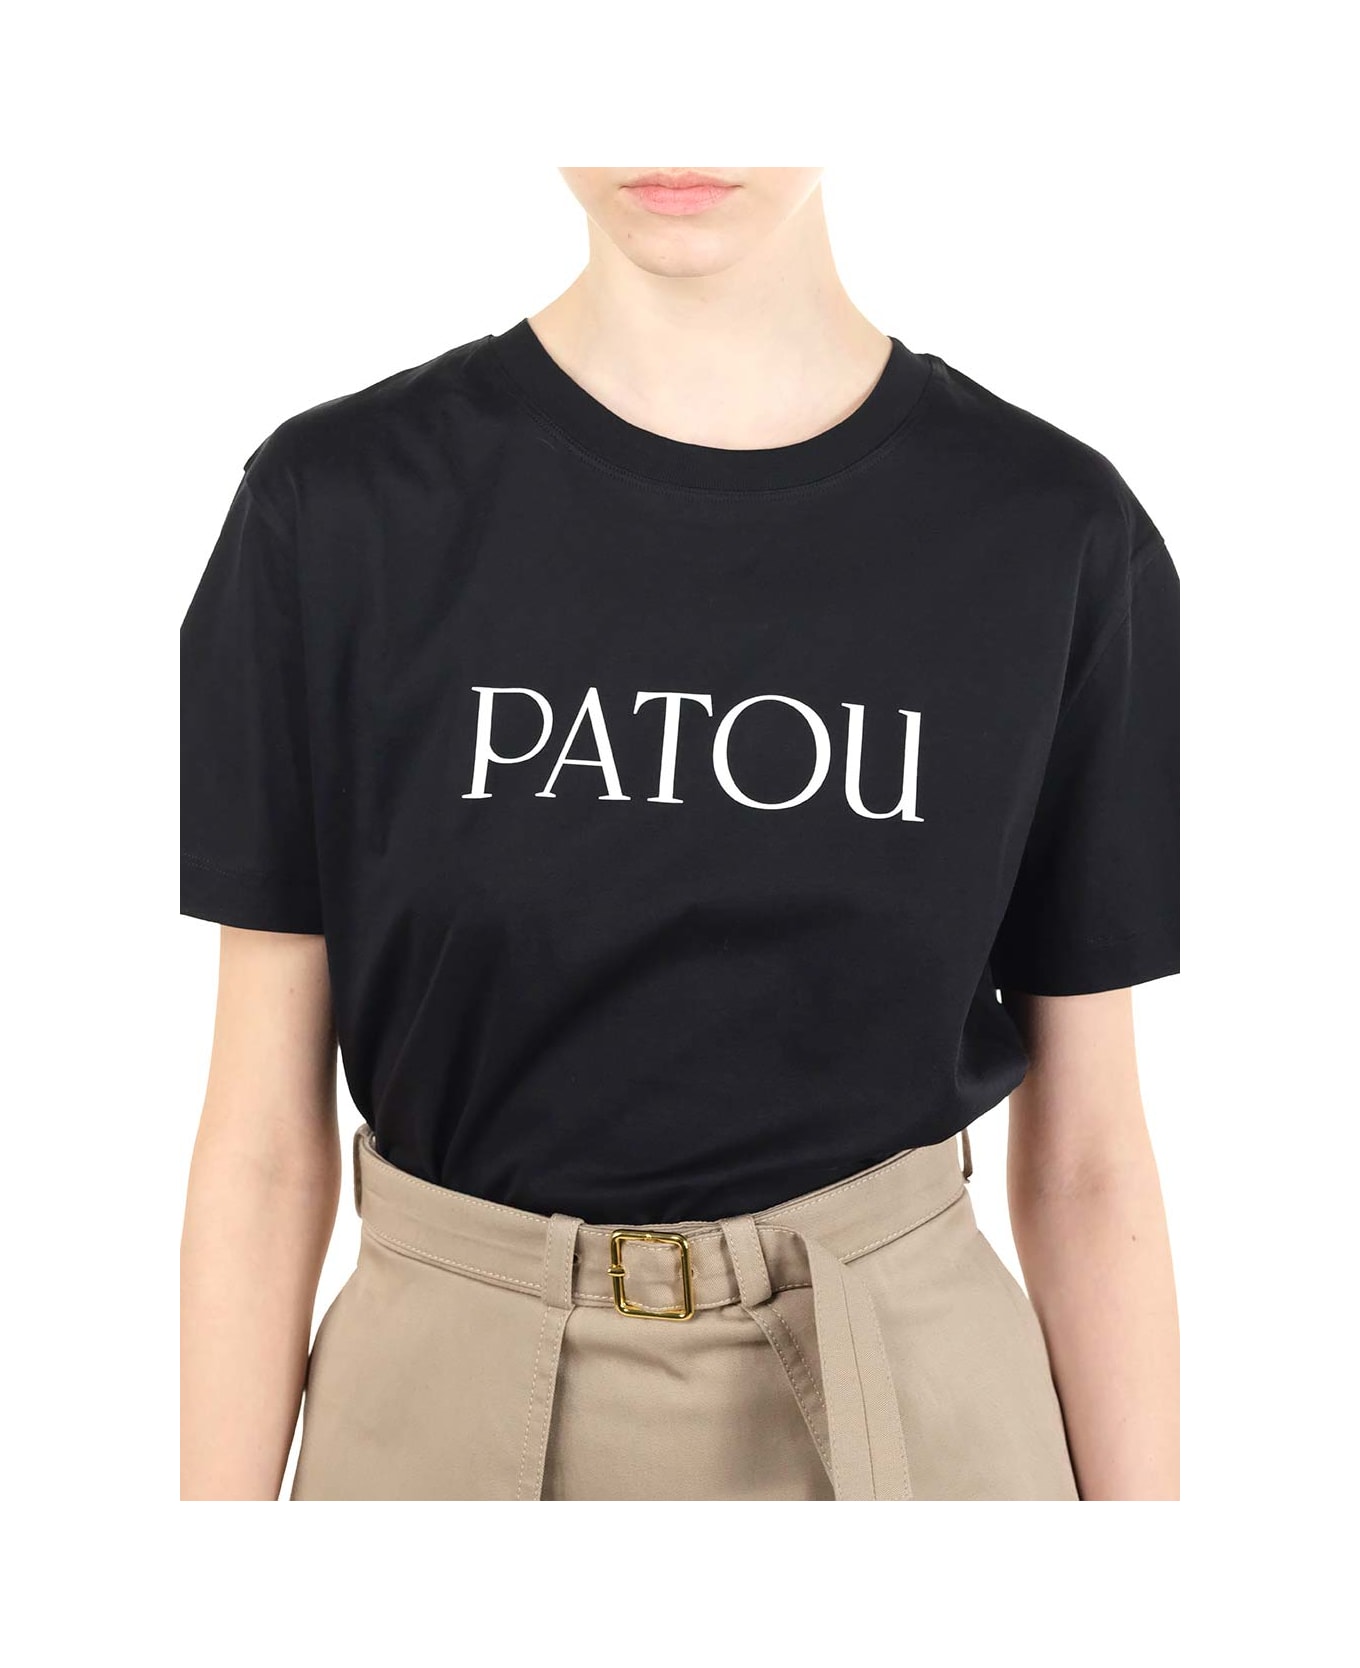 Patou Black T-shirt With White Logo - Nero